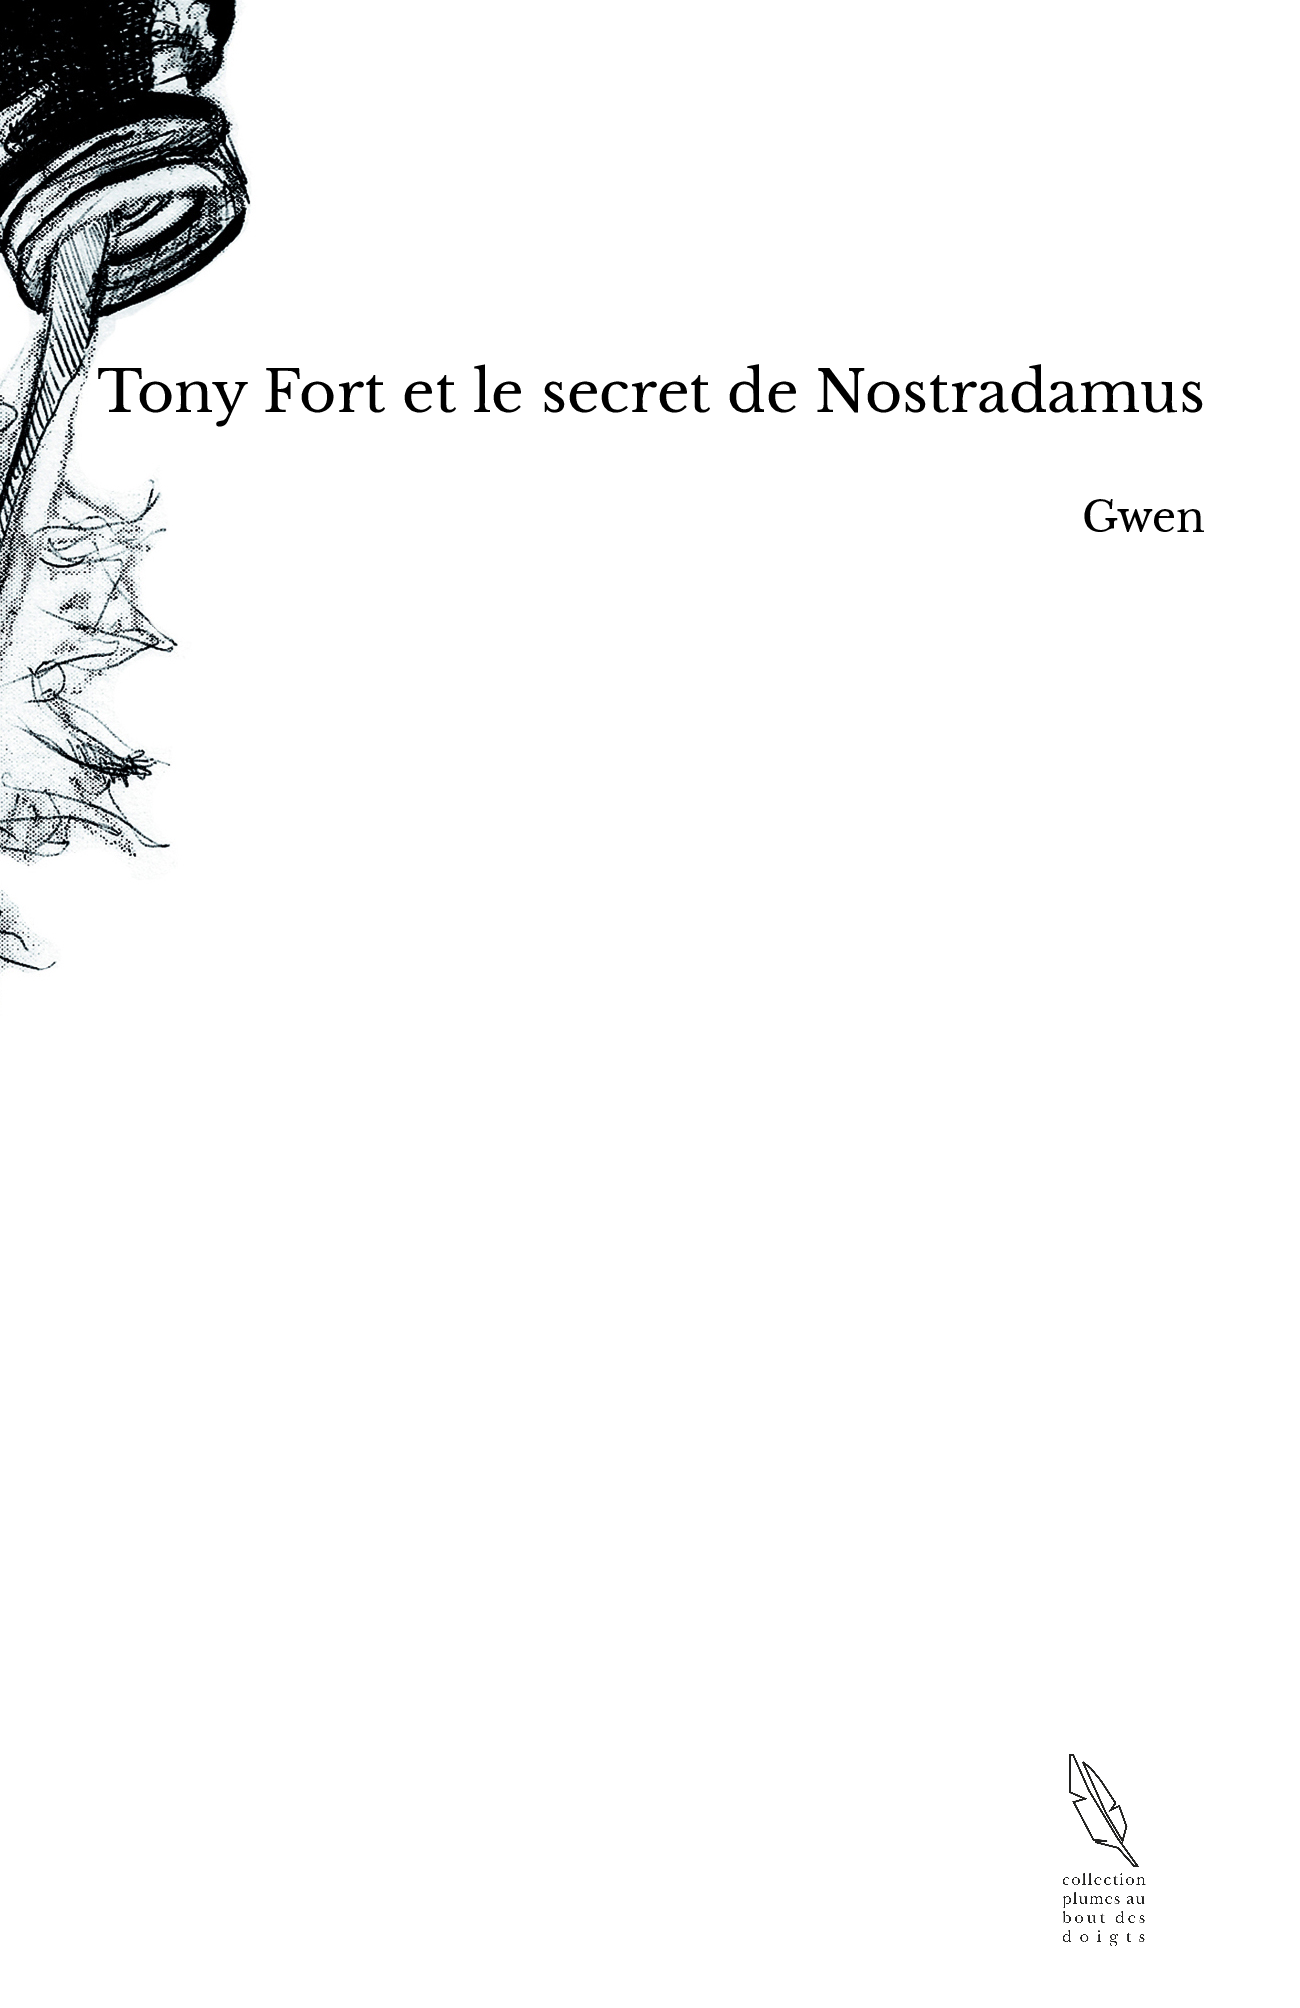 Tony Fort et le secret de Nostradamus